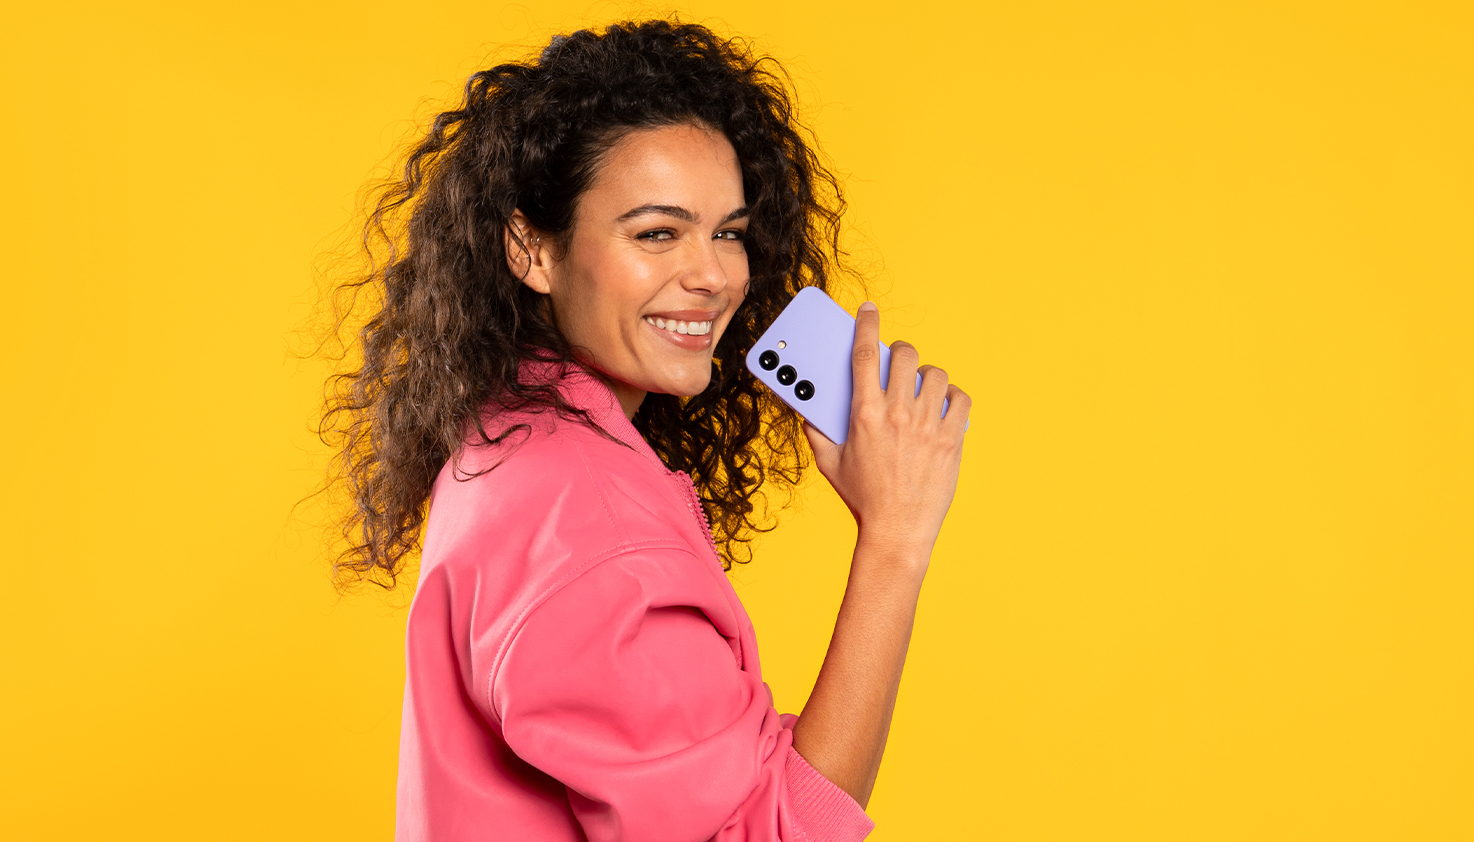 Eine Frau hält lachend eine lila Handyhülle, der Hintergrund ist gelb.